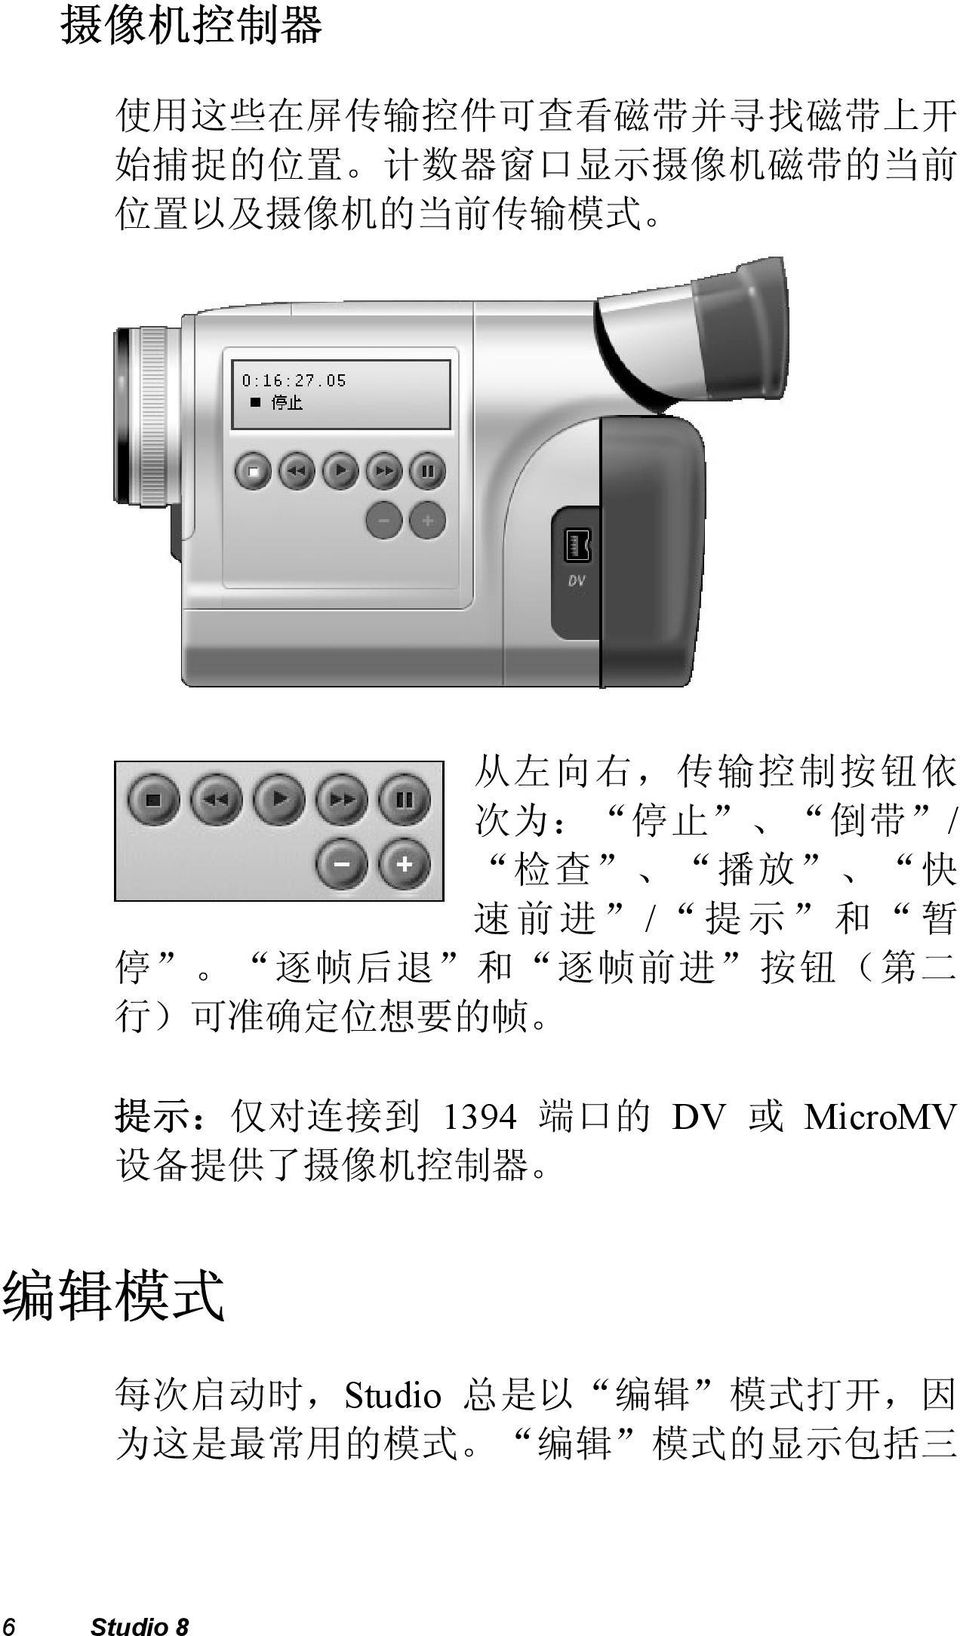 退 和 逐 帧 前 进 按 钮 ( 第 二 行 ) 可 准 确 定 位 想 要 的 帧 提 示 : 仅 对 连 接 到 1394 端 口 的 DV 或 MicroMV 设 备 提 供 了 摄 像 机